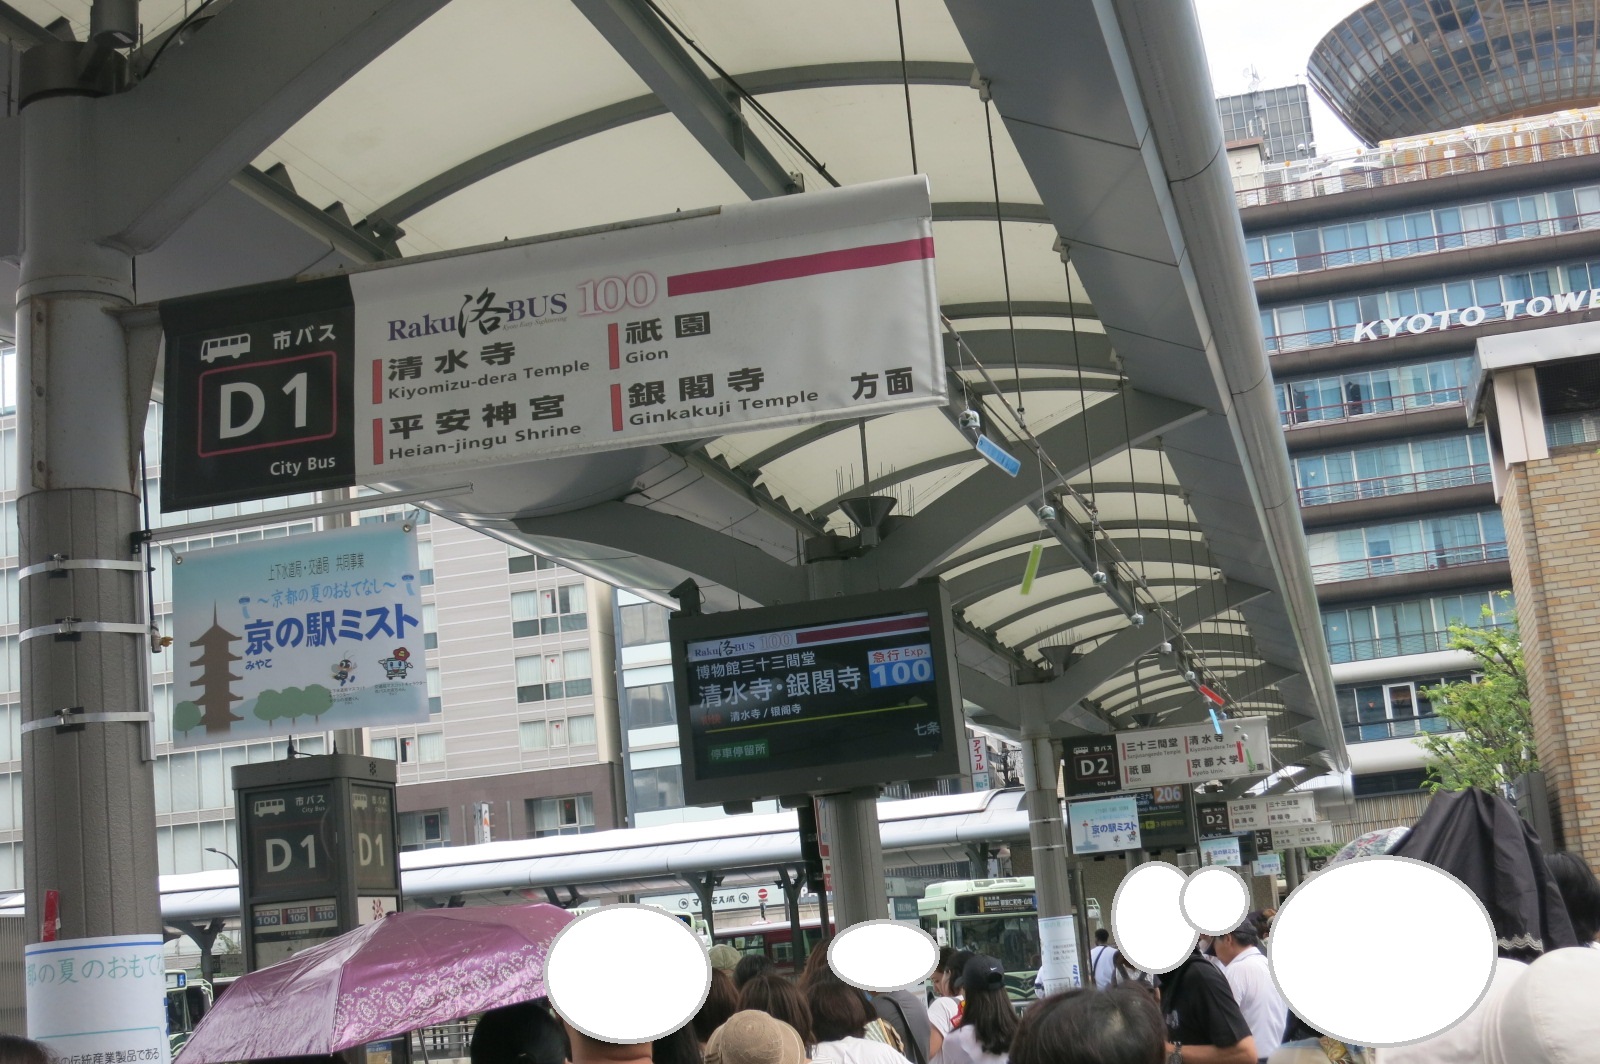 京都駅から市バスに乗りました。三十三間堂に行くには、乗り場は「D1」か「D2」とのことでした。